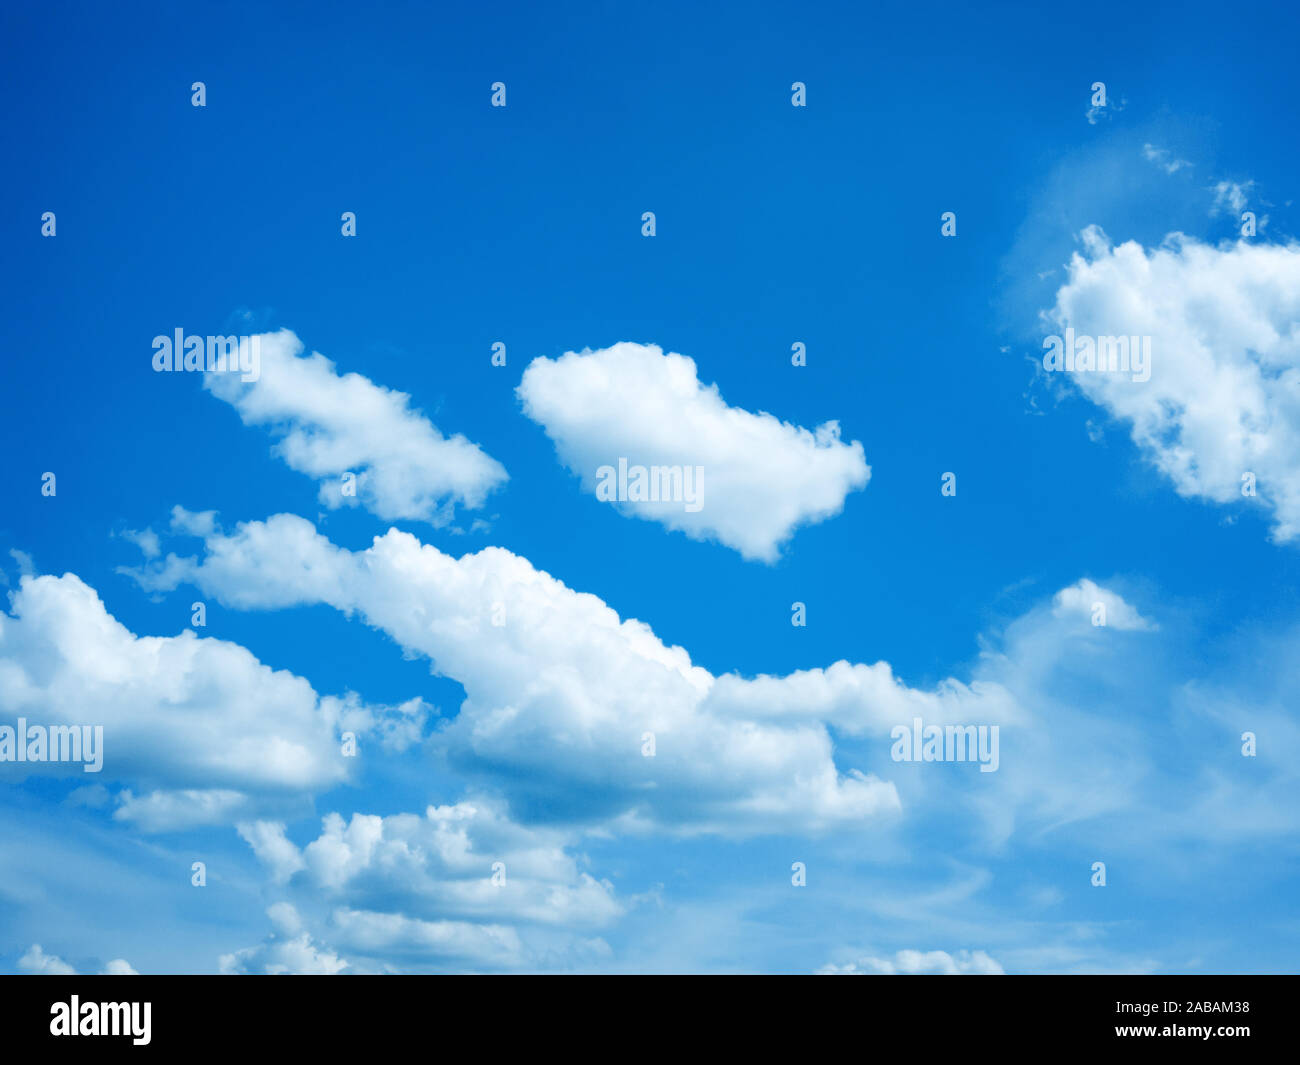 Ein schöner blauer Himmel mit weissen Wolken Foto Stock